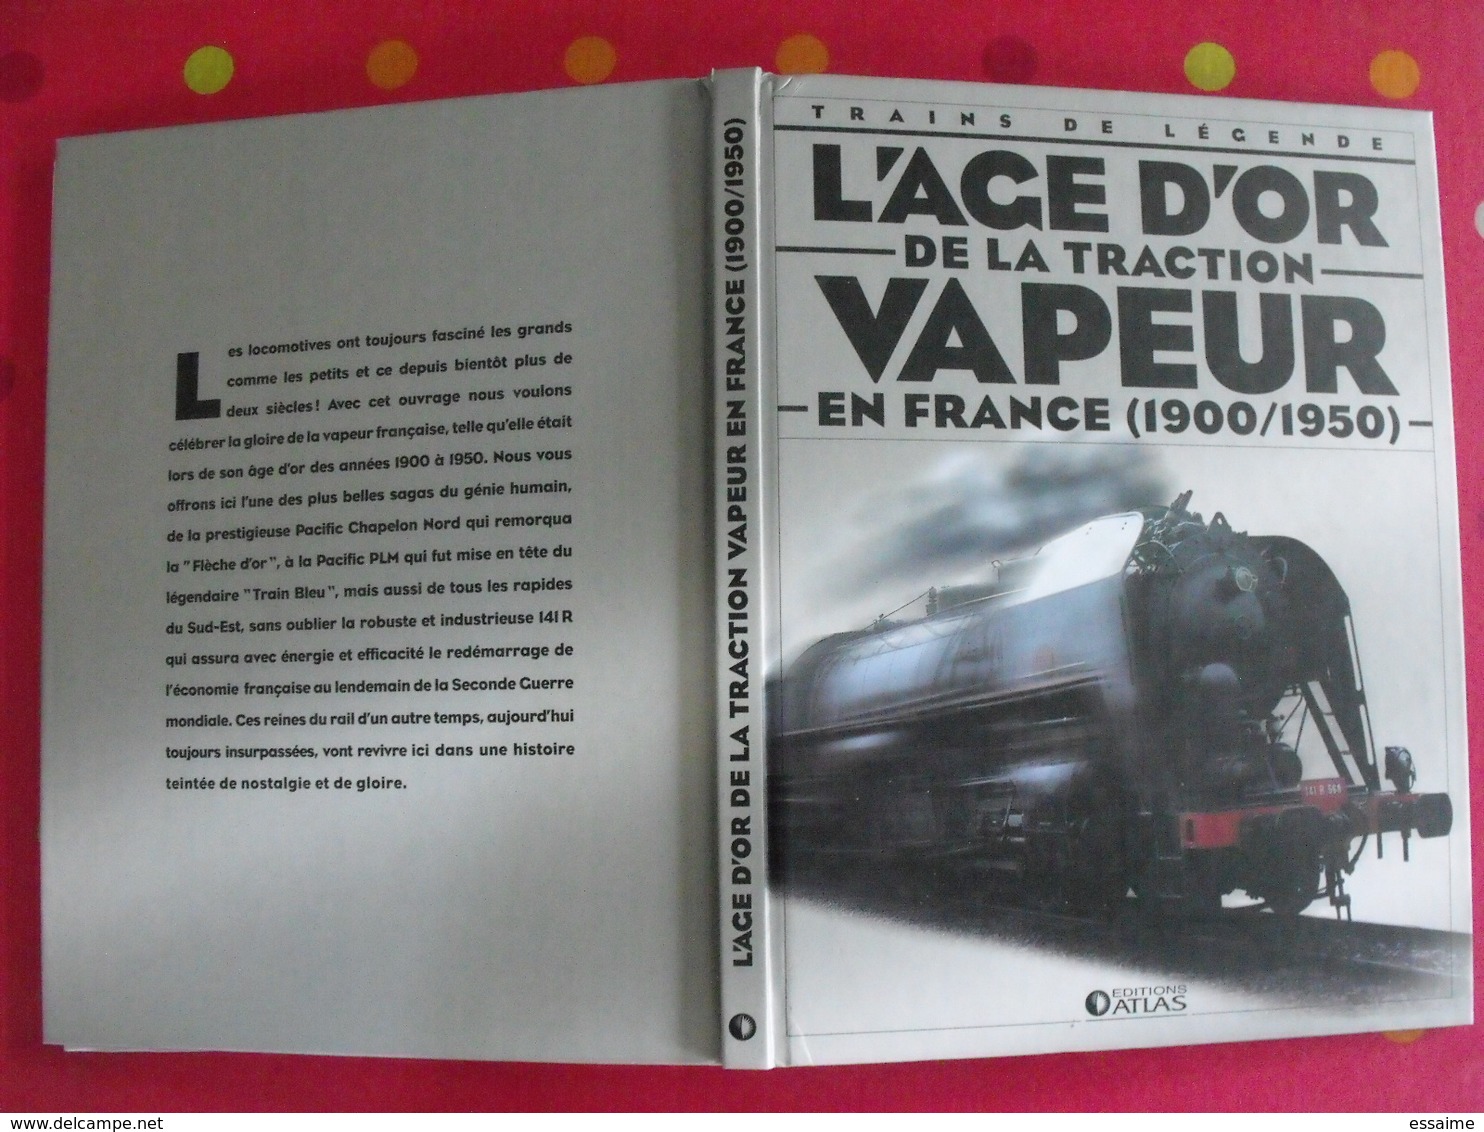 L'age D'or De La Traction Vapeur En France (1900-1950). Trains De Légende. Clive Lamming. Atlas 2005 + Poster - Bahnwesen & Tramways